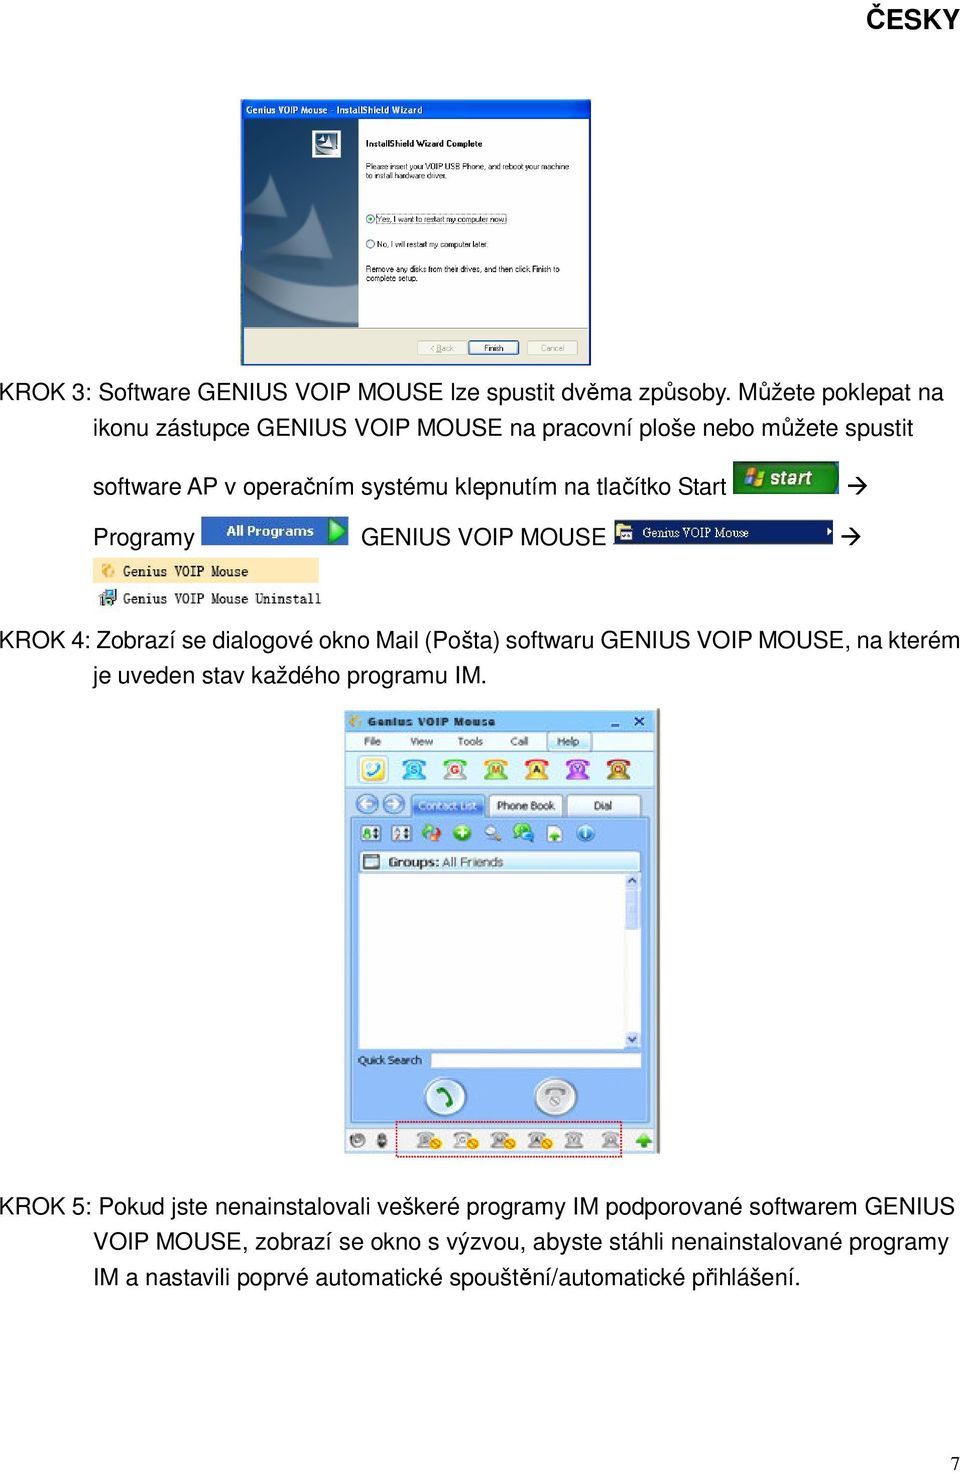 Start Programy GENIUS VOIP MOUSE KROK 4: Zobrazí se dialogové okno Mail (Pošta) softwaru GENIUS VOIP MOUSE, na kterém je uveden stav každého